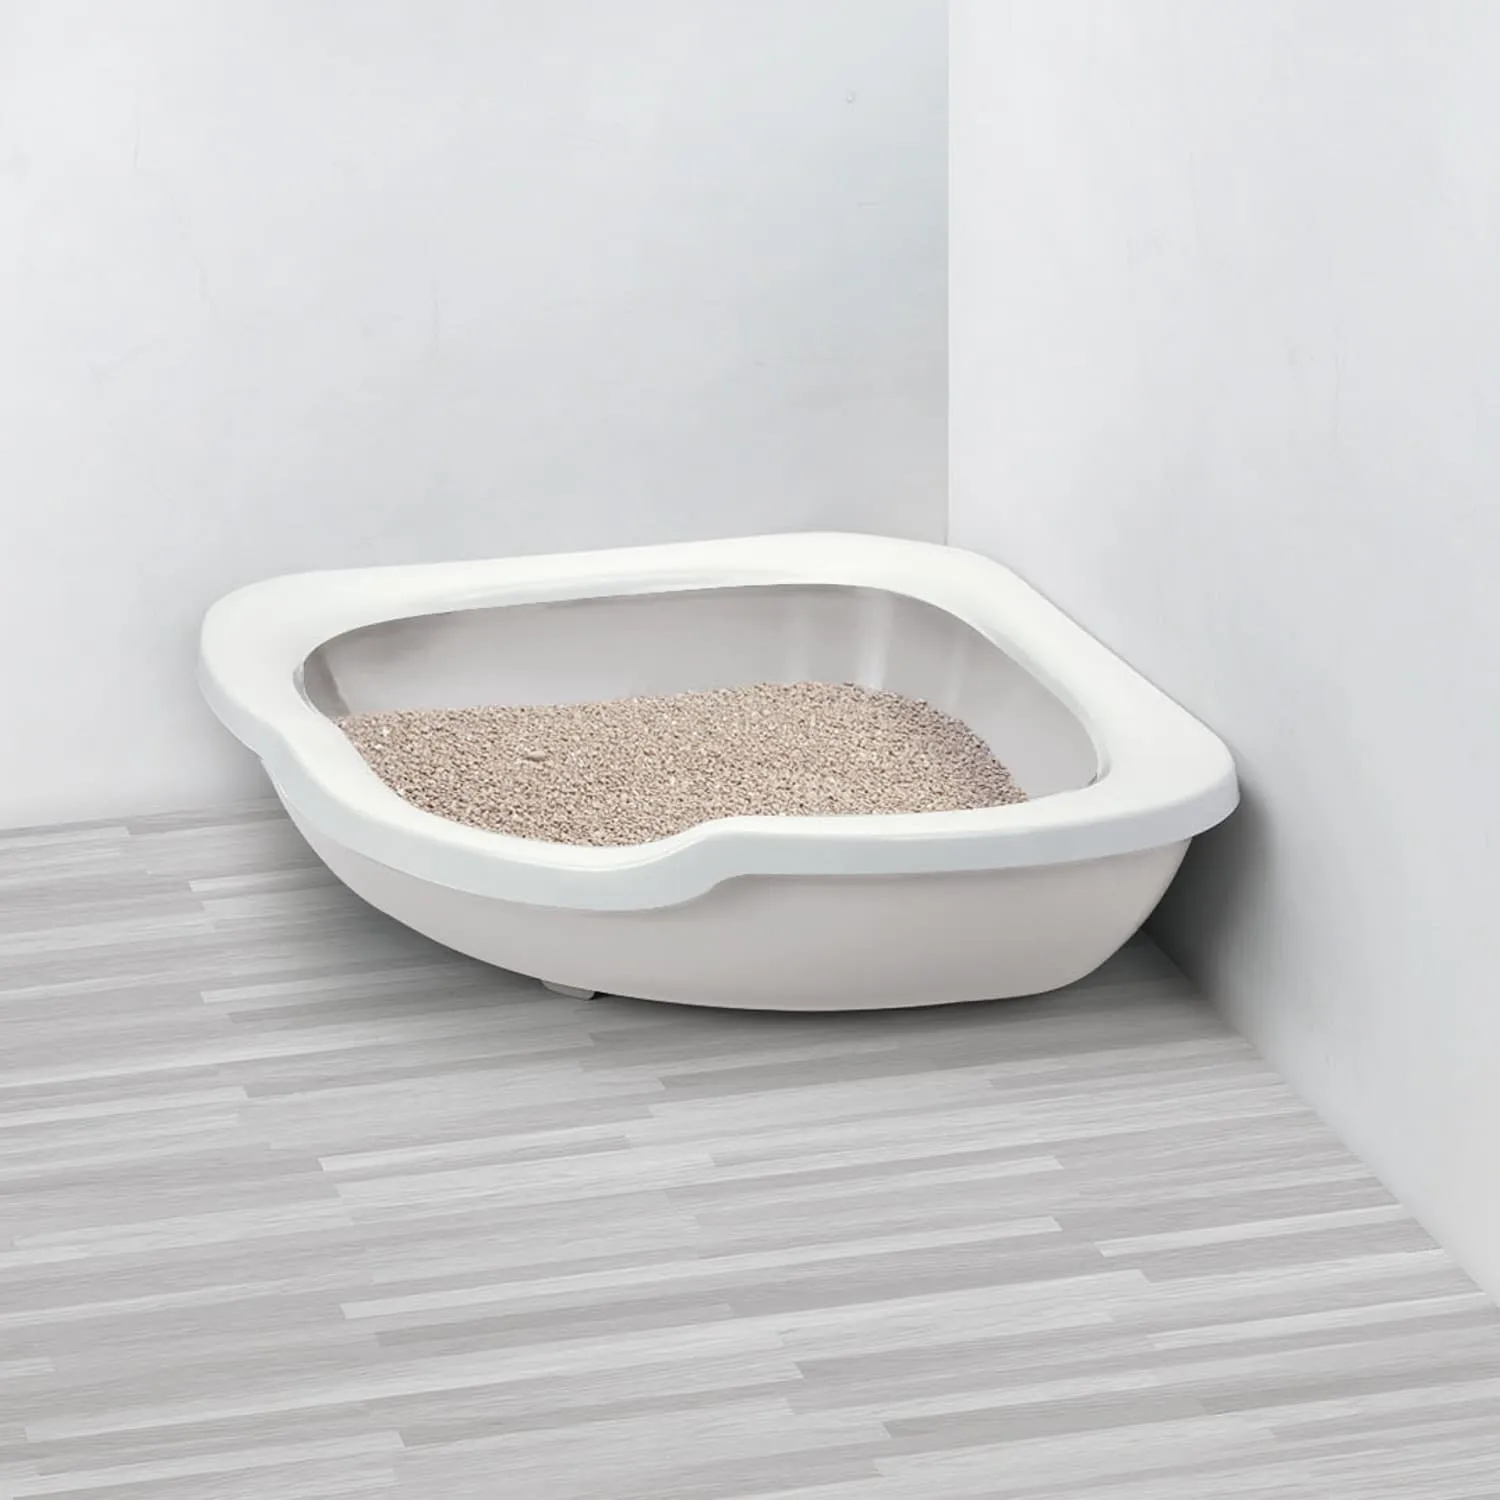 IMAC туалет-лоток для кошек угловой FRED 51х51х15,5h см, светло-серый